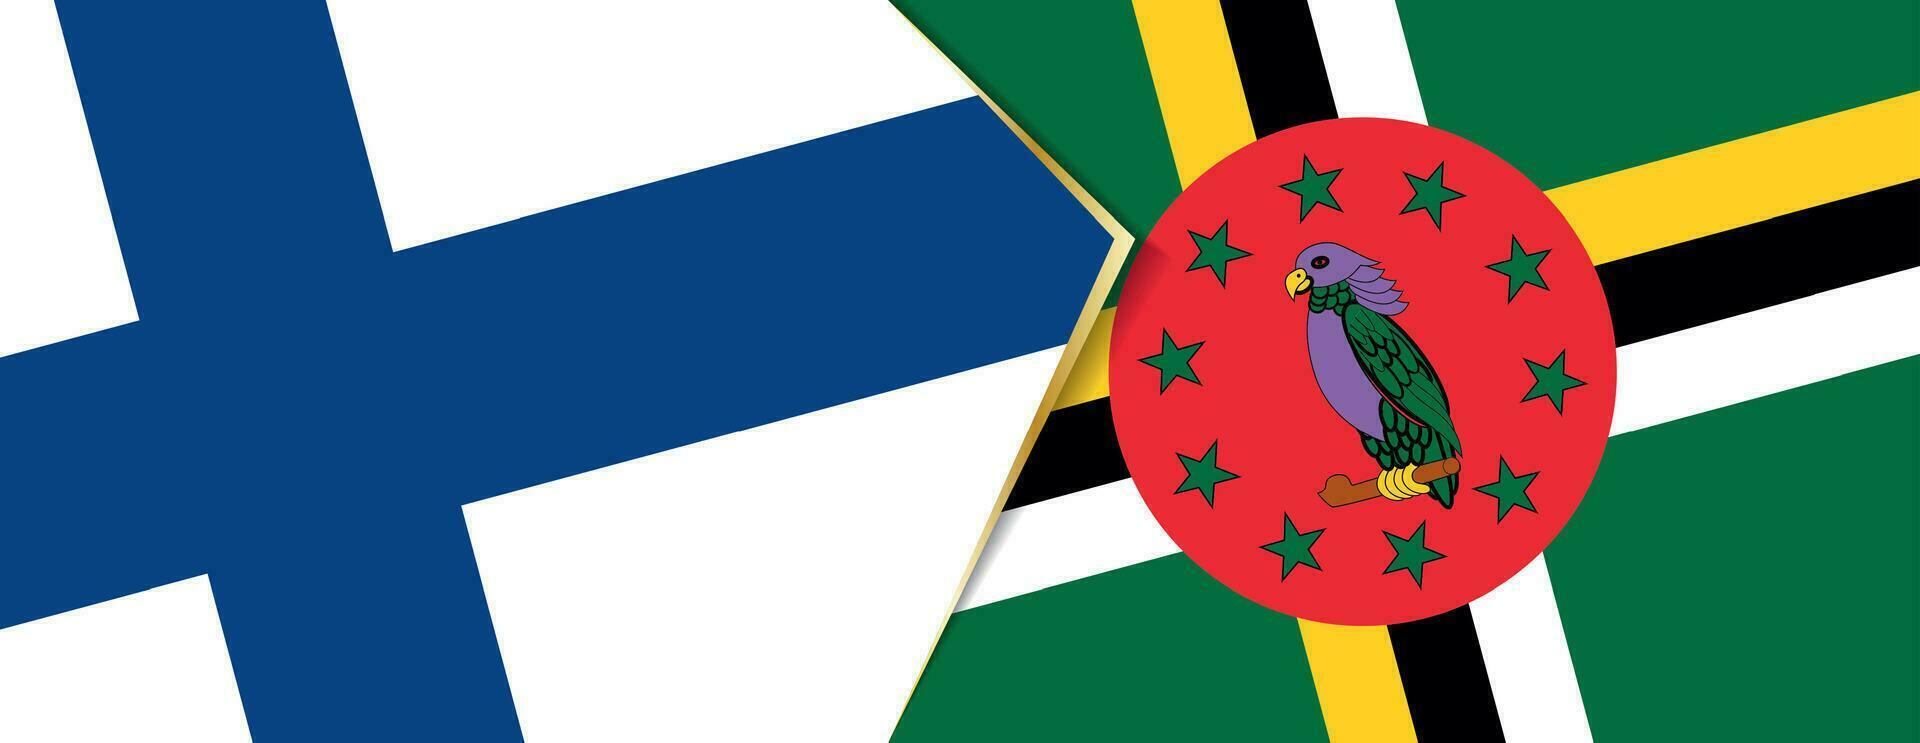 Finnland und Dominica Flaggen, zwei Vektor Flaggen.